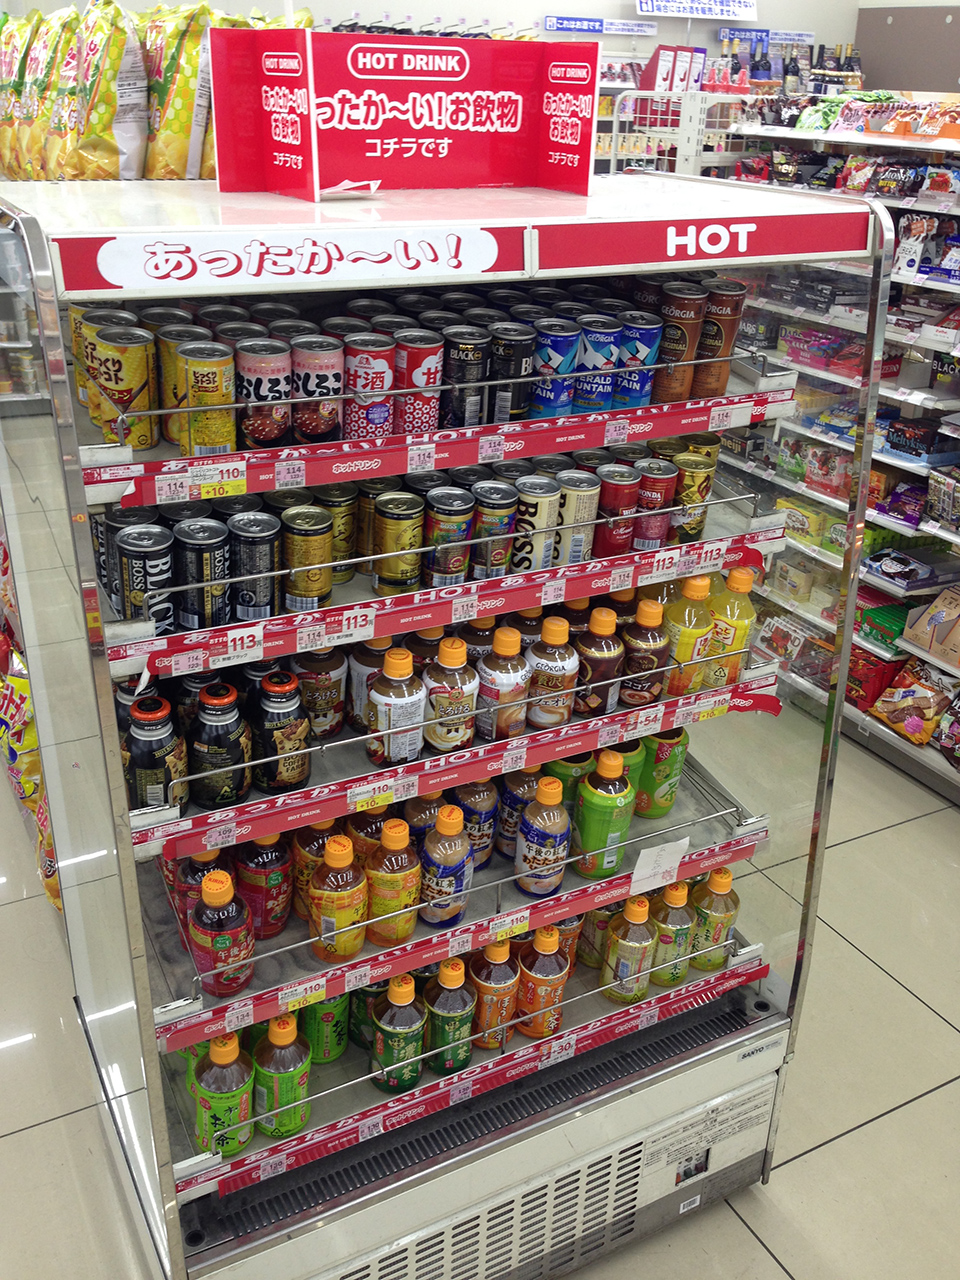 บริการใน ร้านสะดวกซื้อญี่ปุ่น : จำหน่ายเครื่องดื่มร้อน